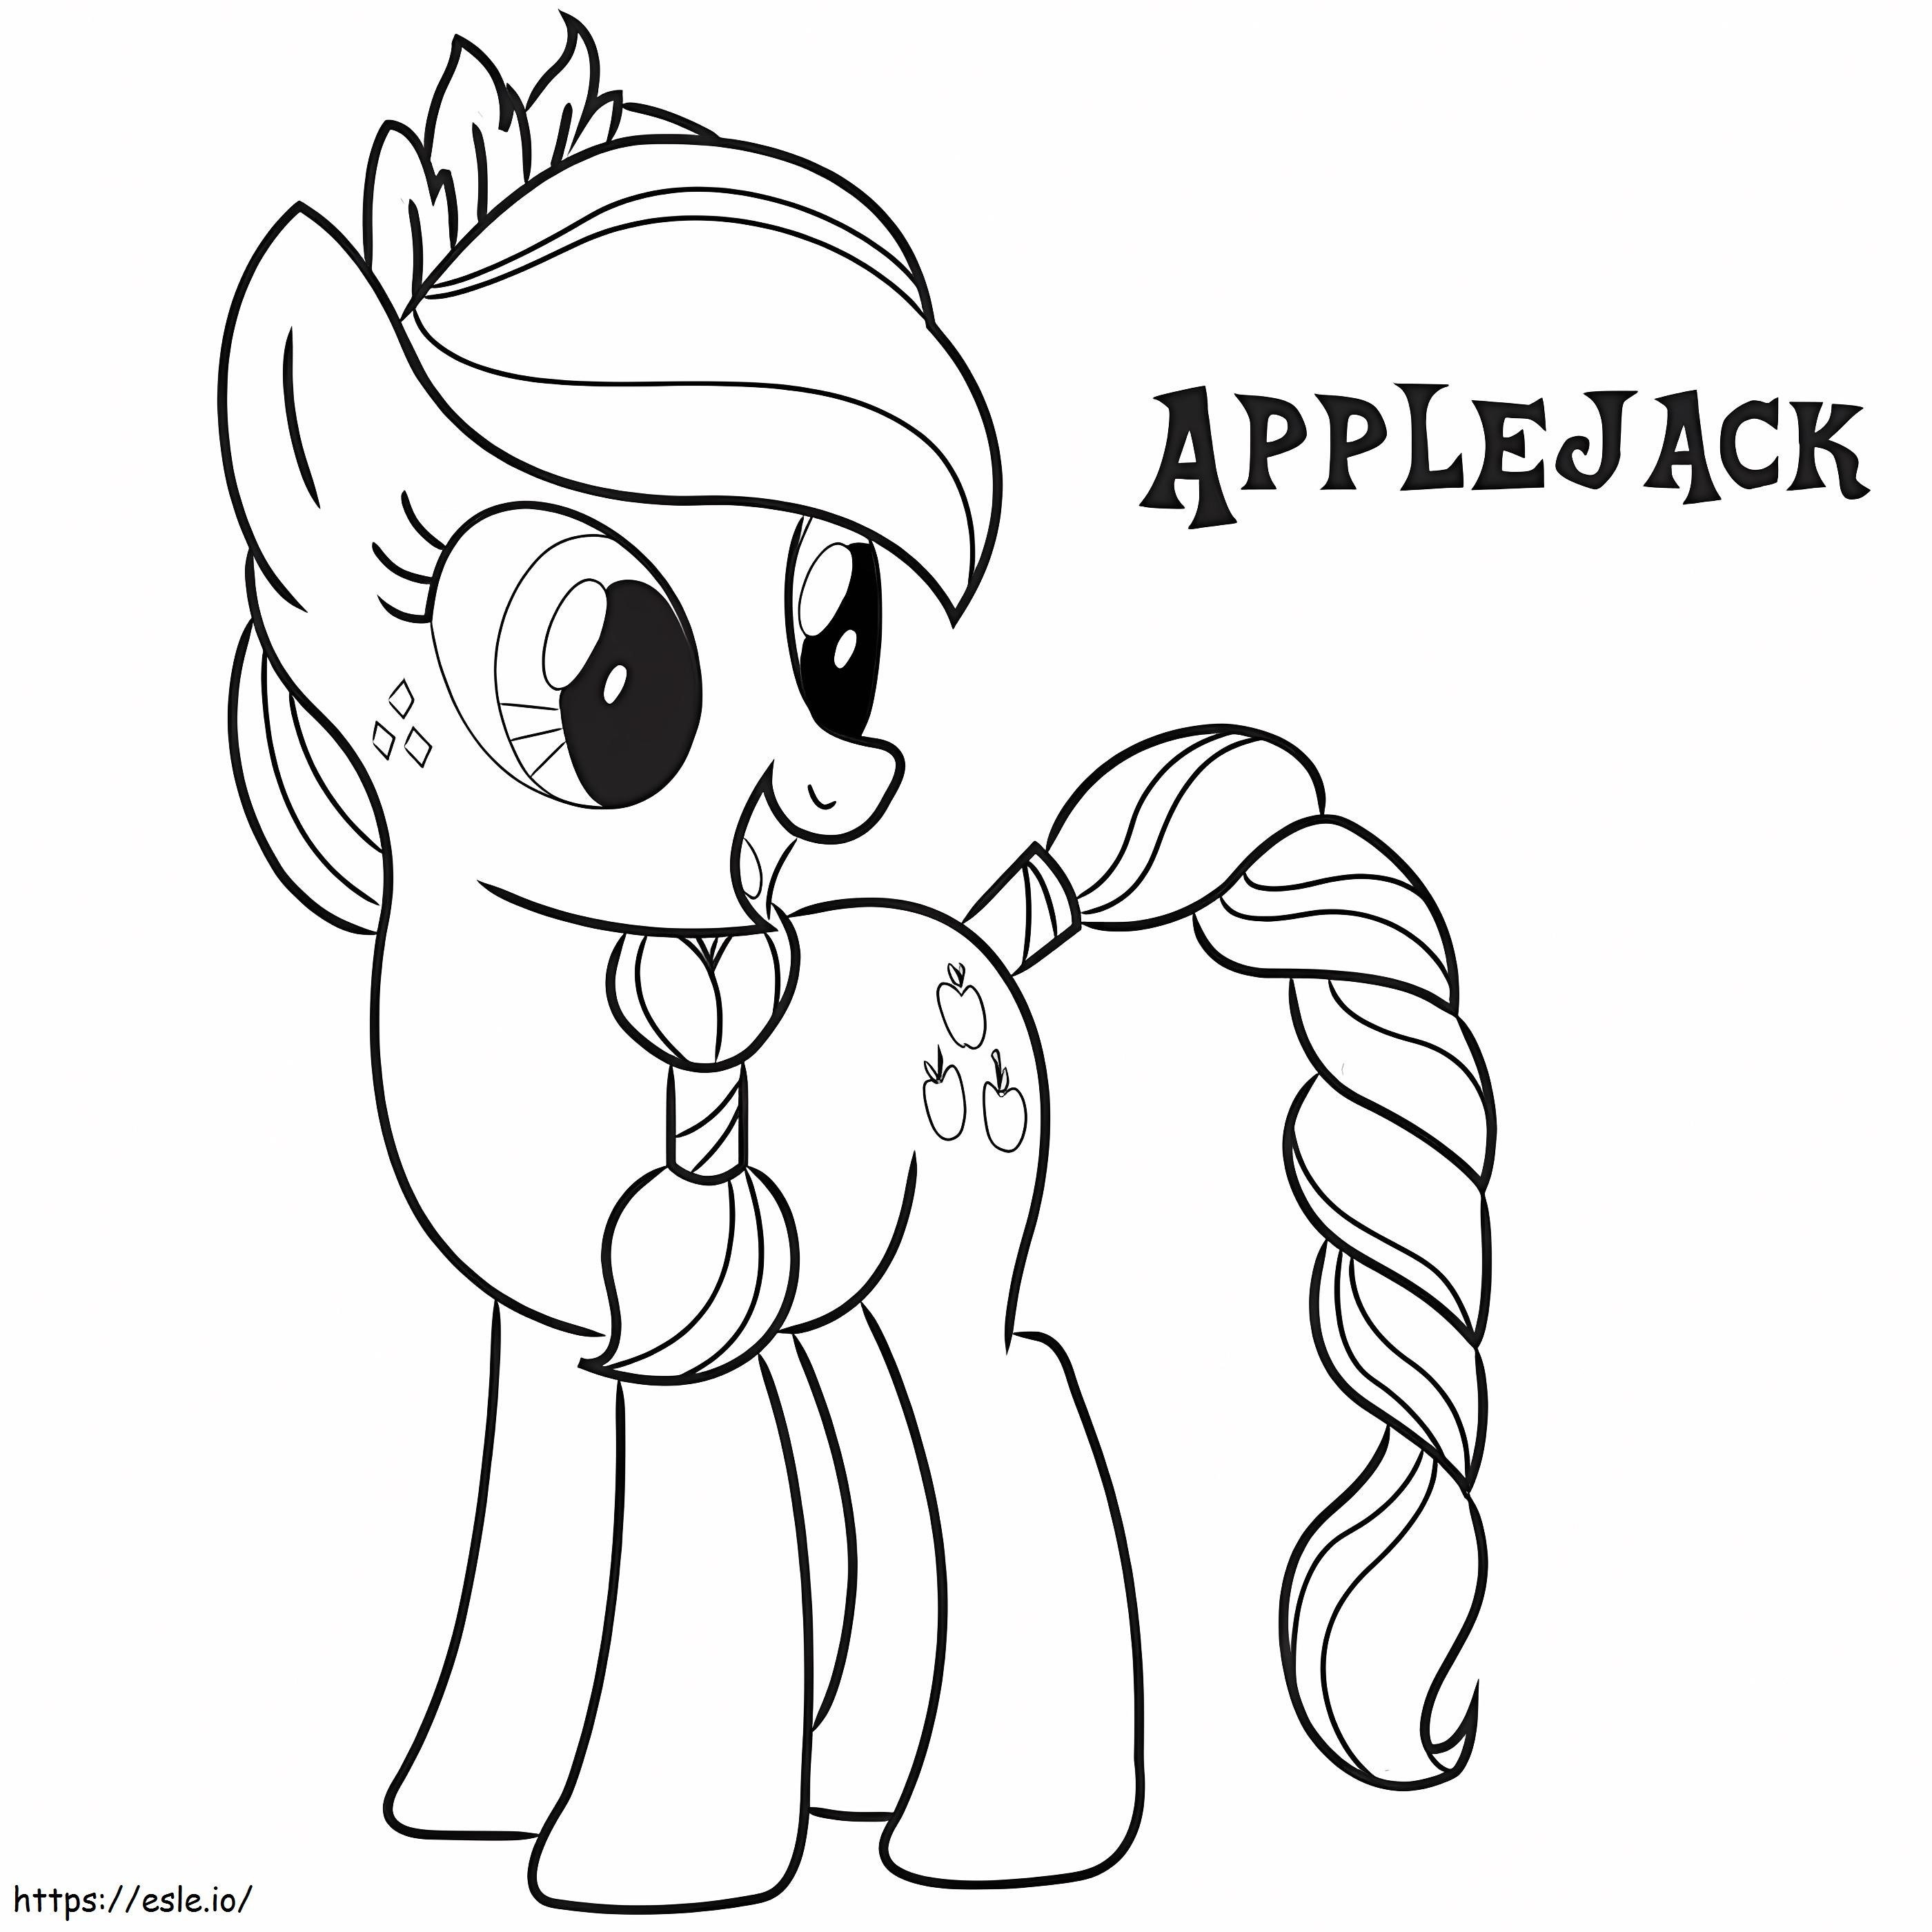 Applejack-Pony ausmalbilder